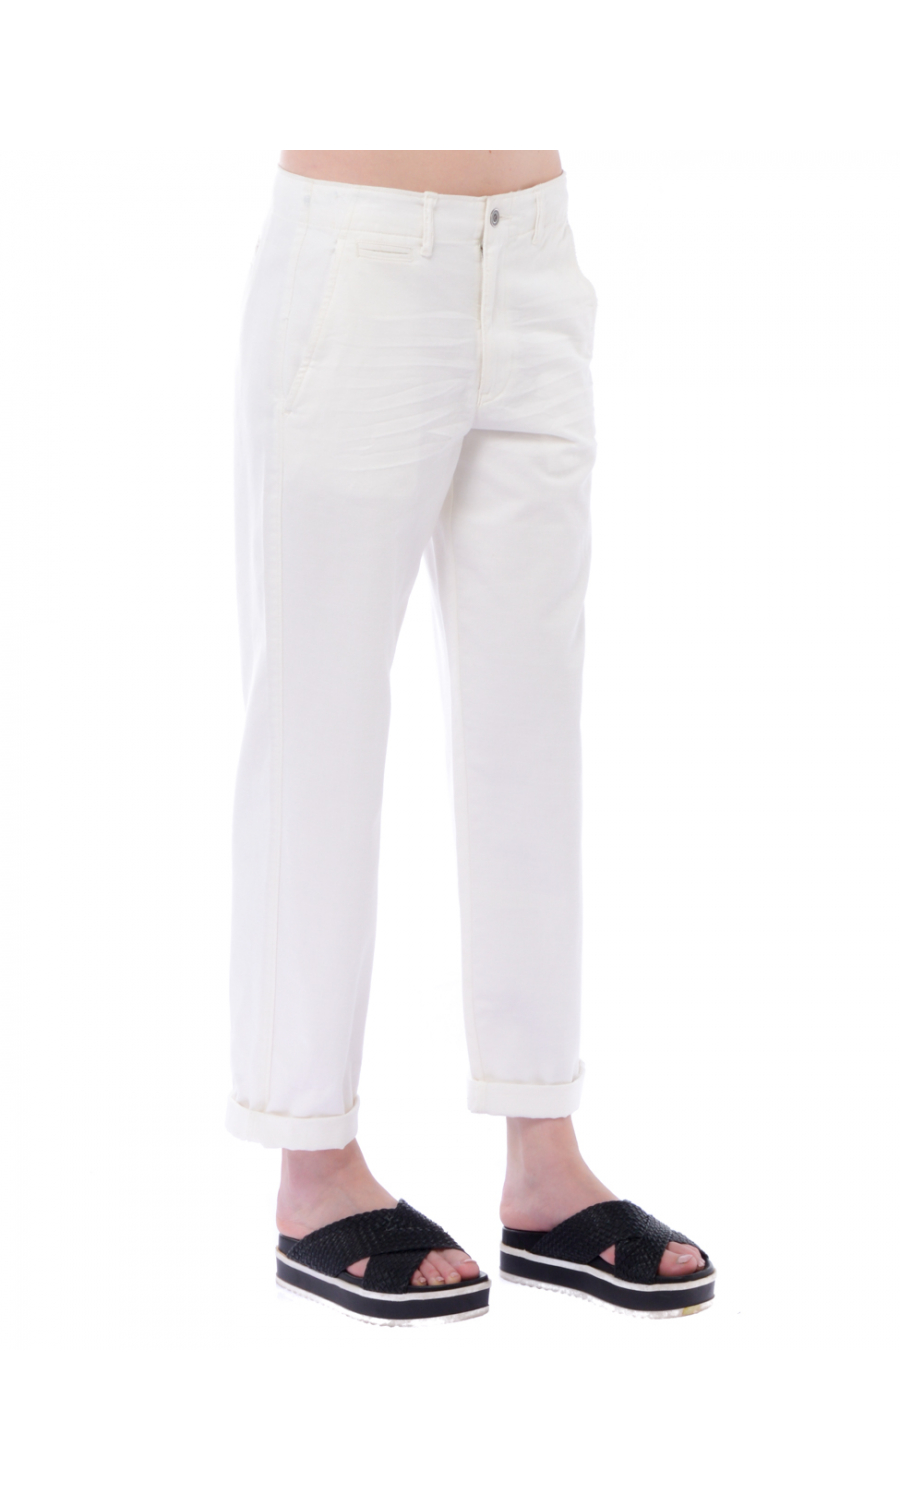 Pantalone donna Ralph Lauren in cotone modello chino